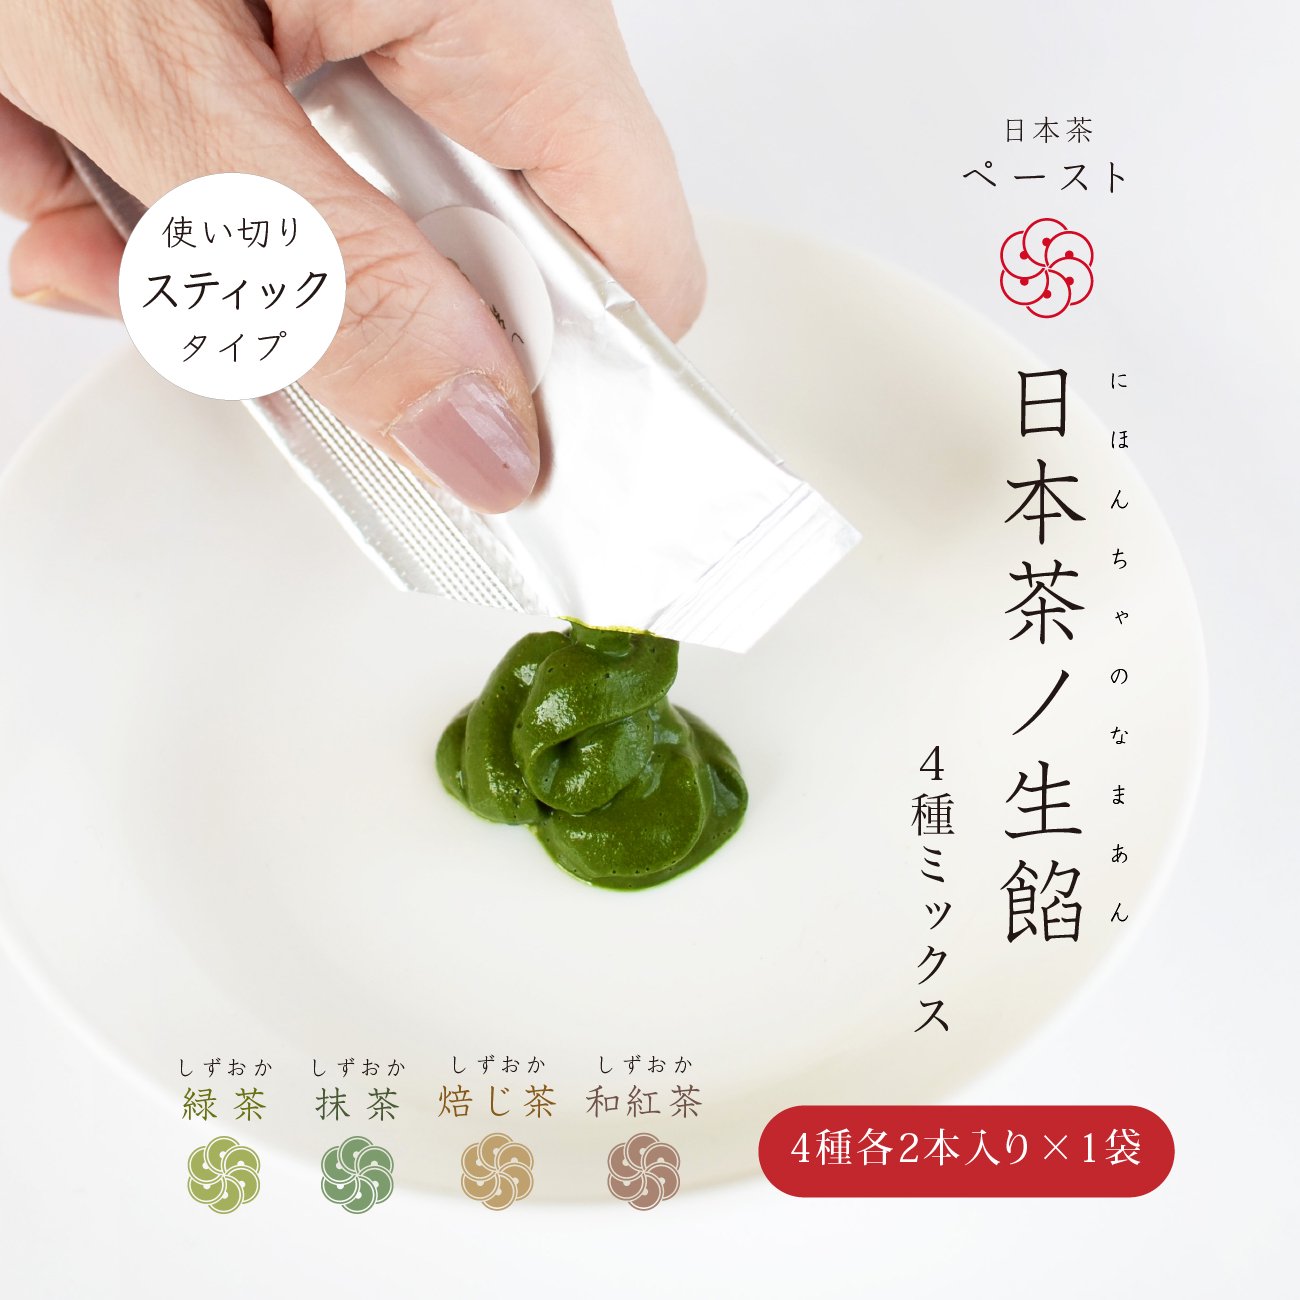 【日本茶ノ生餡】茶葉と酵母＆ビタミンのみ「日本茶ペースト」